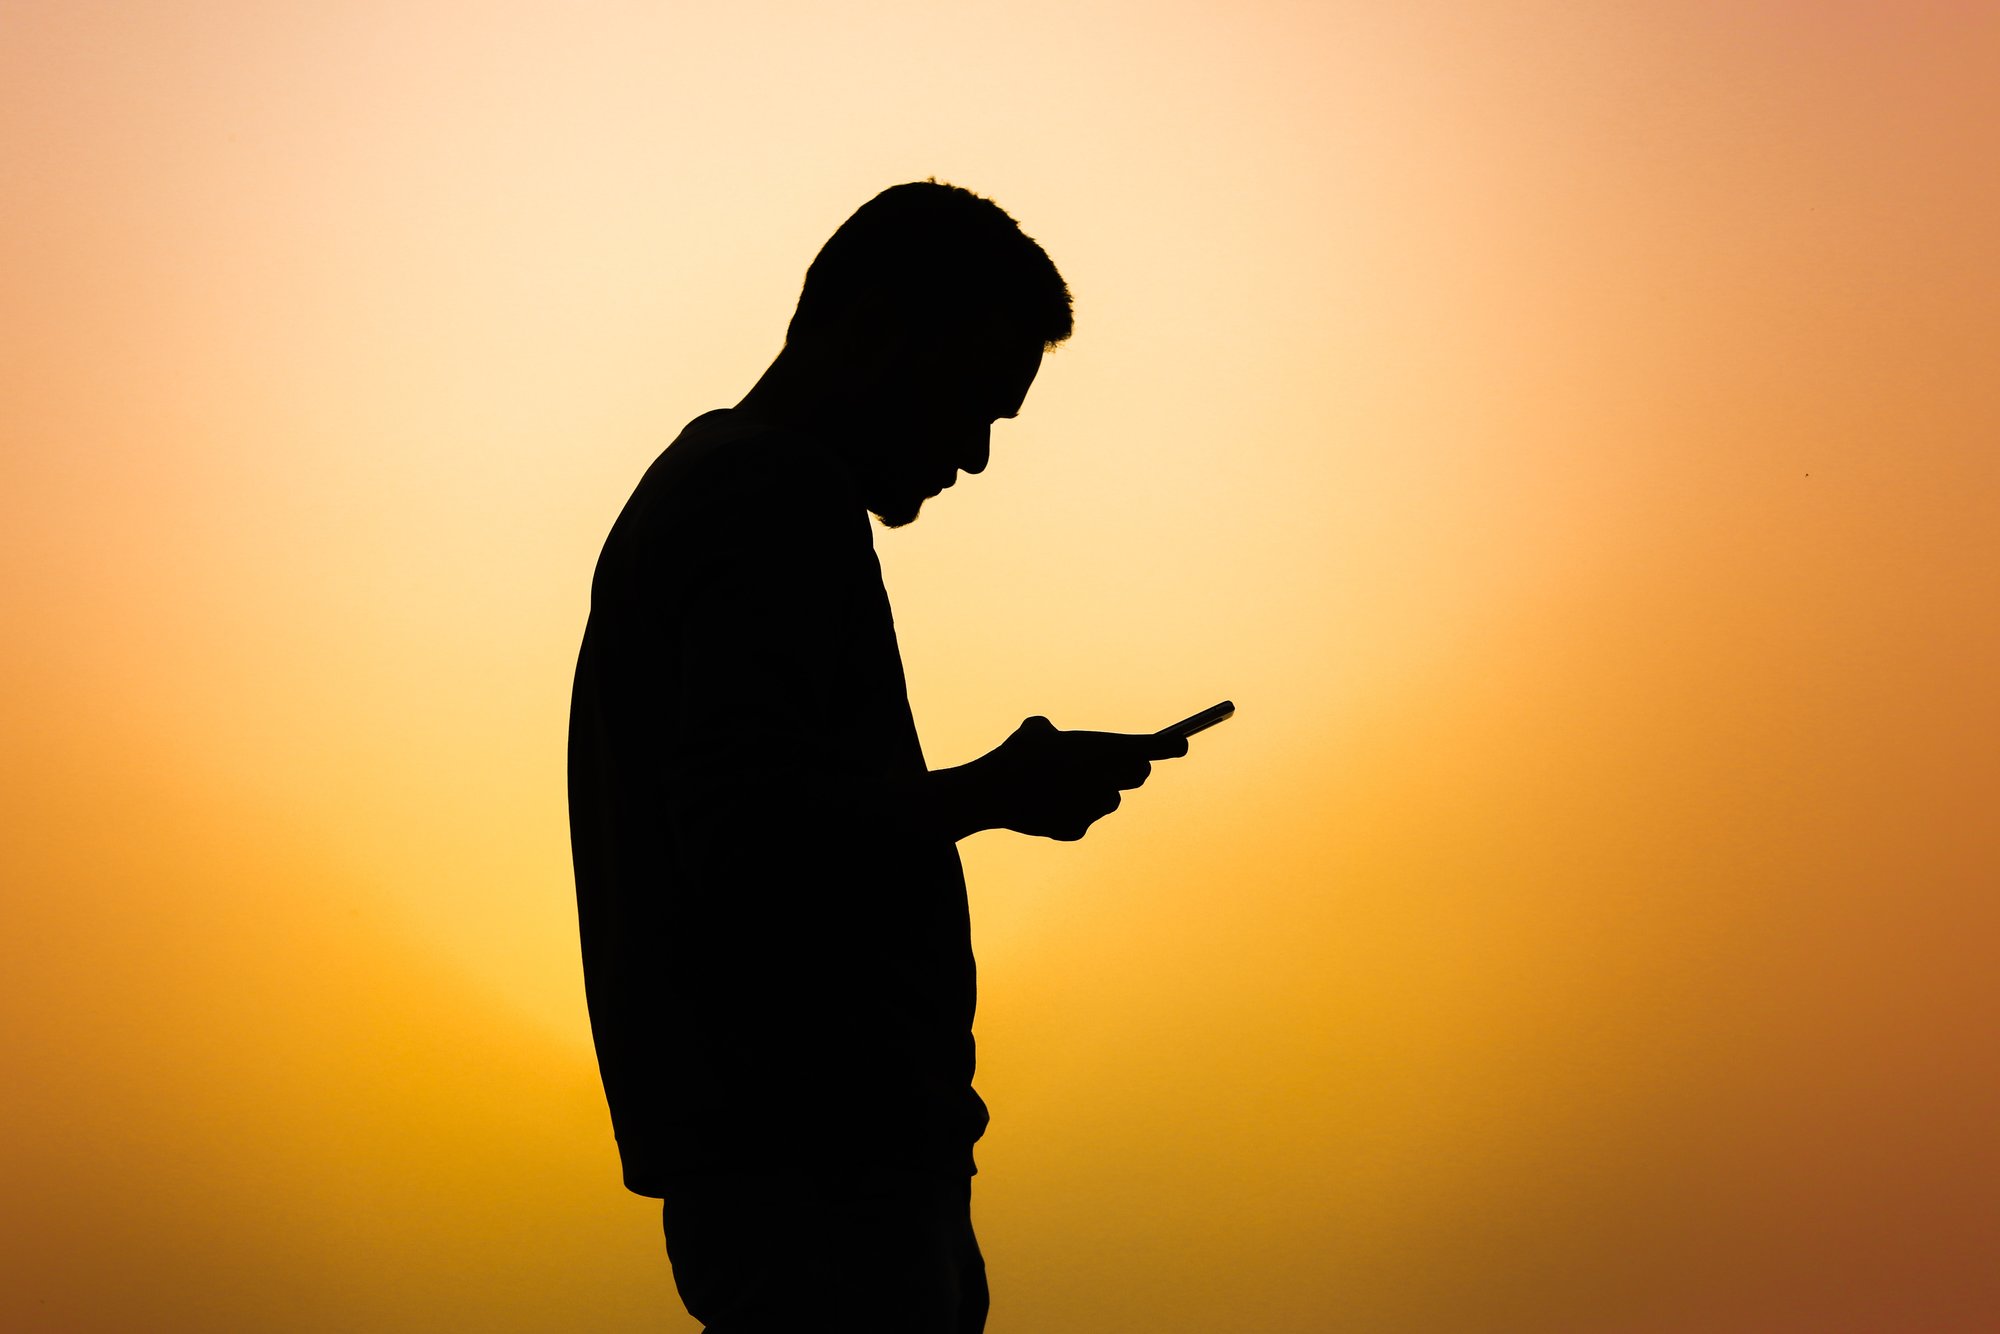 Die Silhouette eines Mannes, der ein Handy benutzt
Bild: Marwan Ahmed